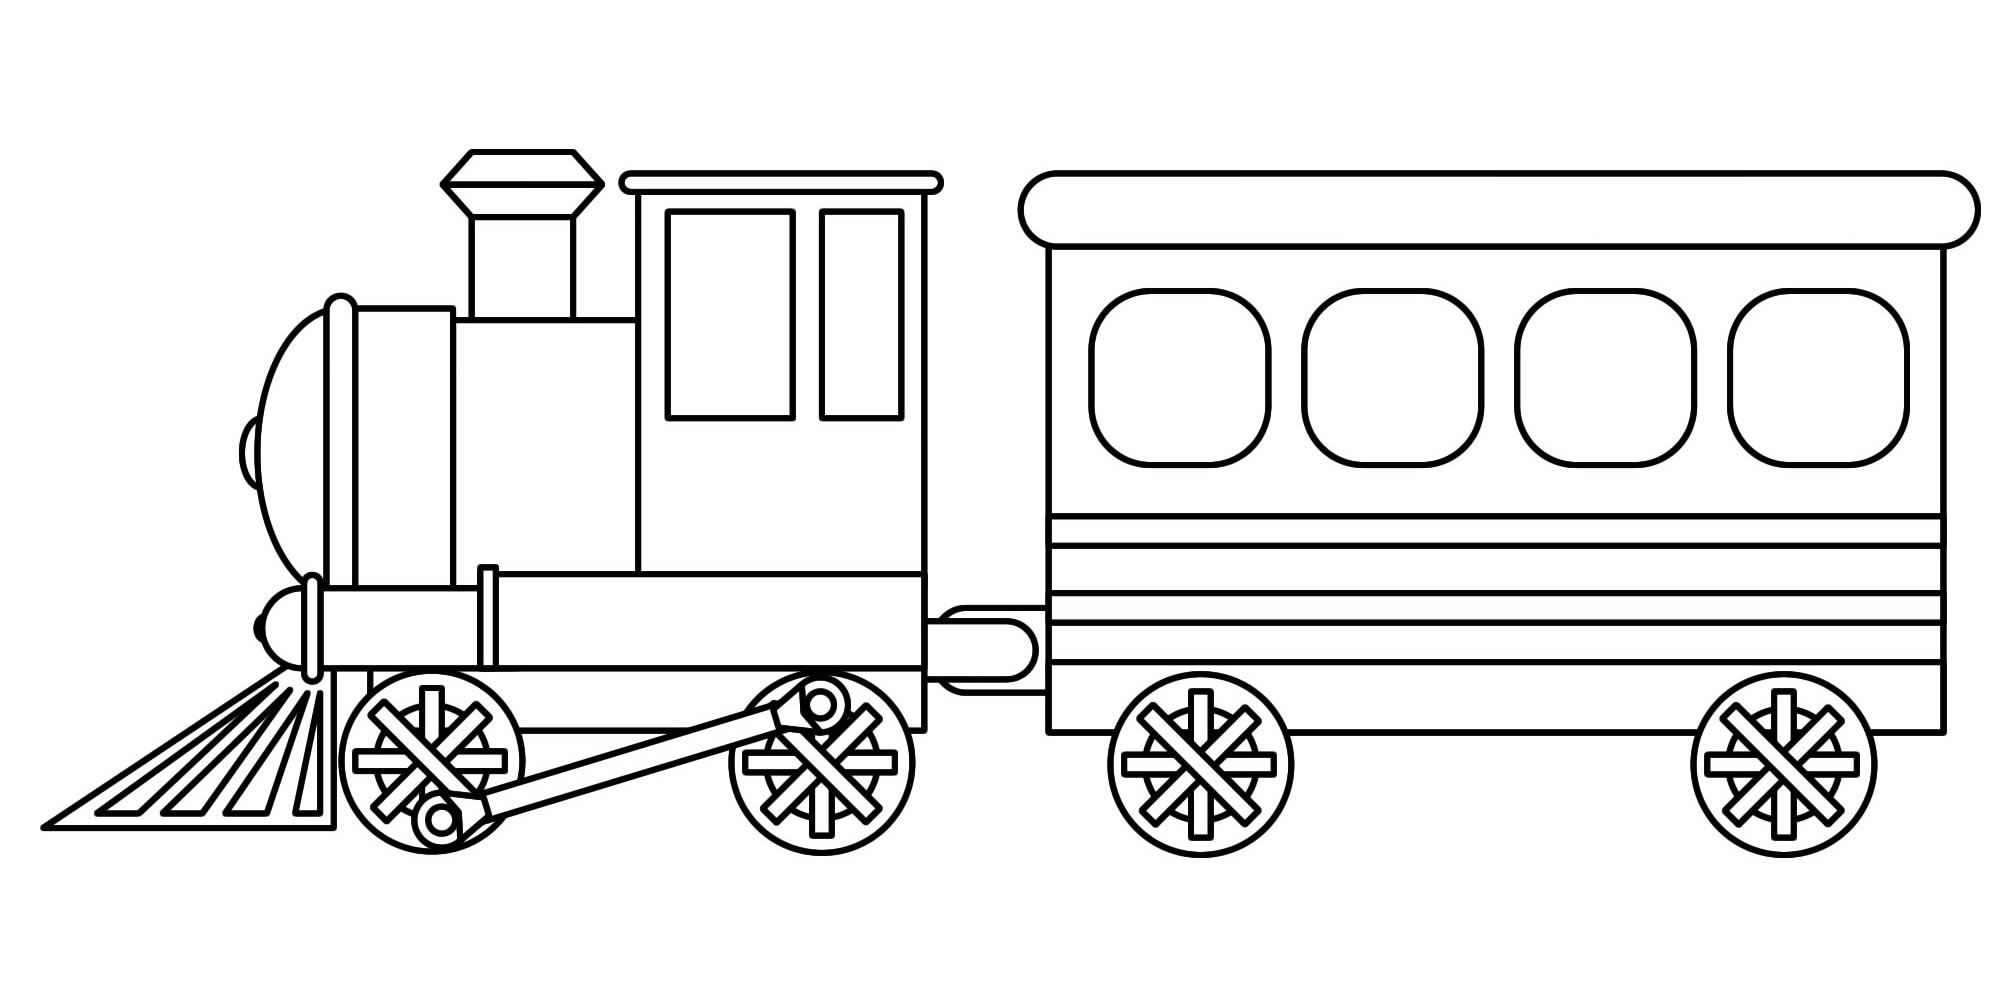 Раскраска поезда с вагоном